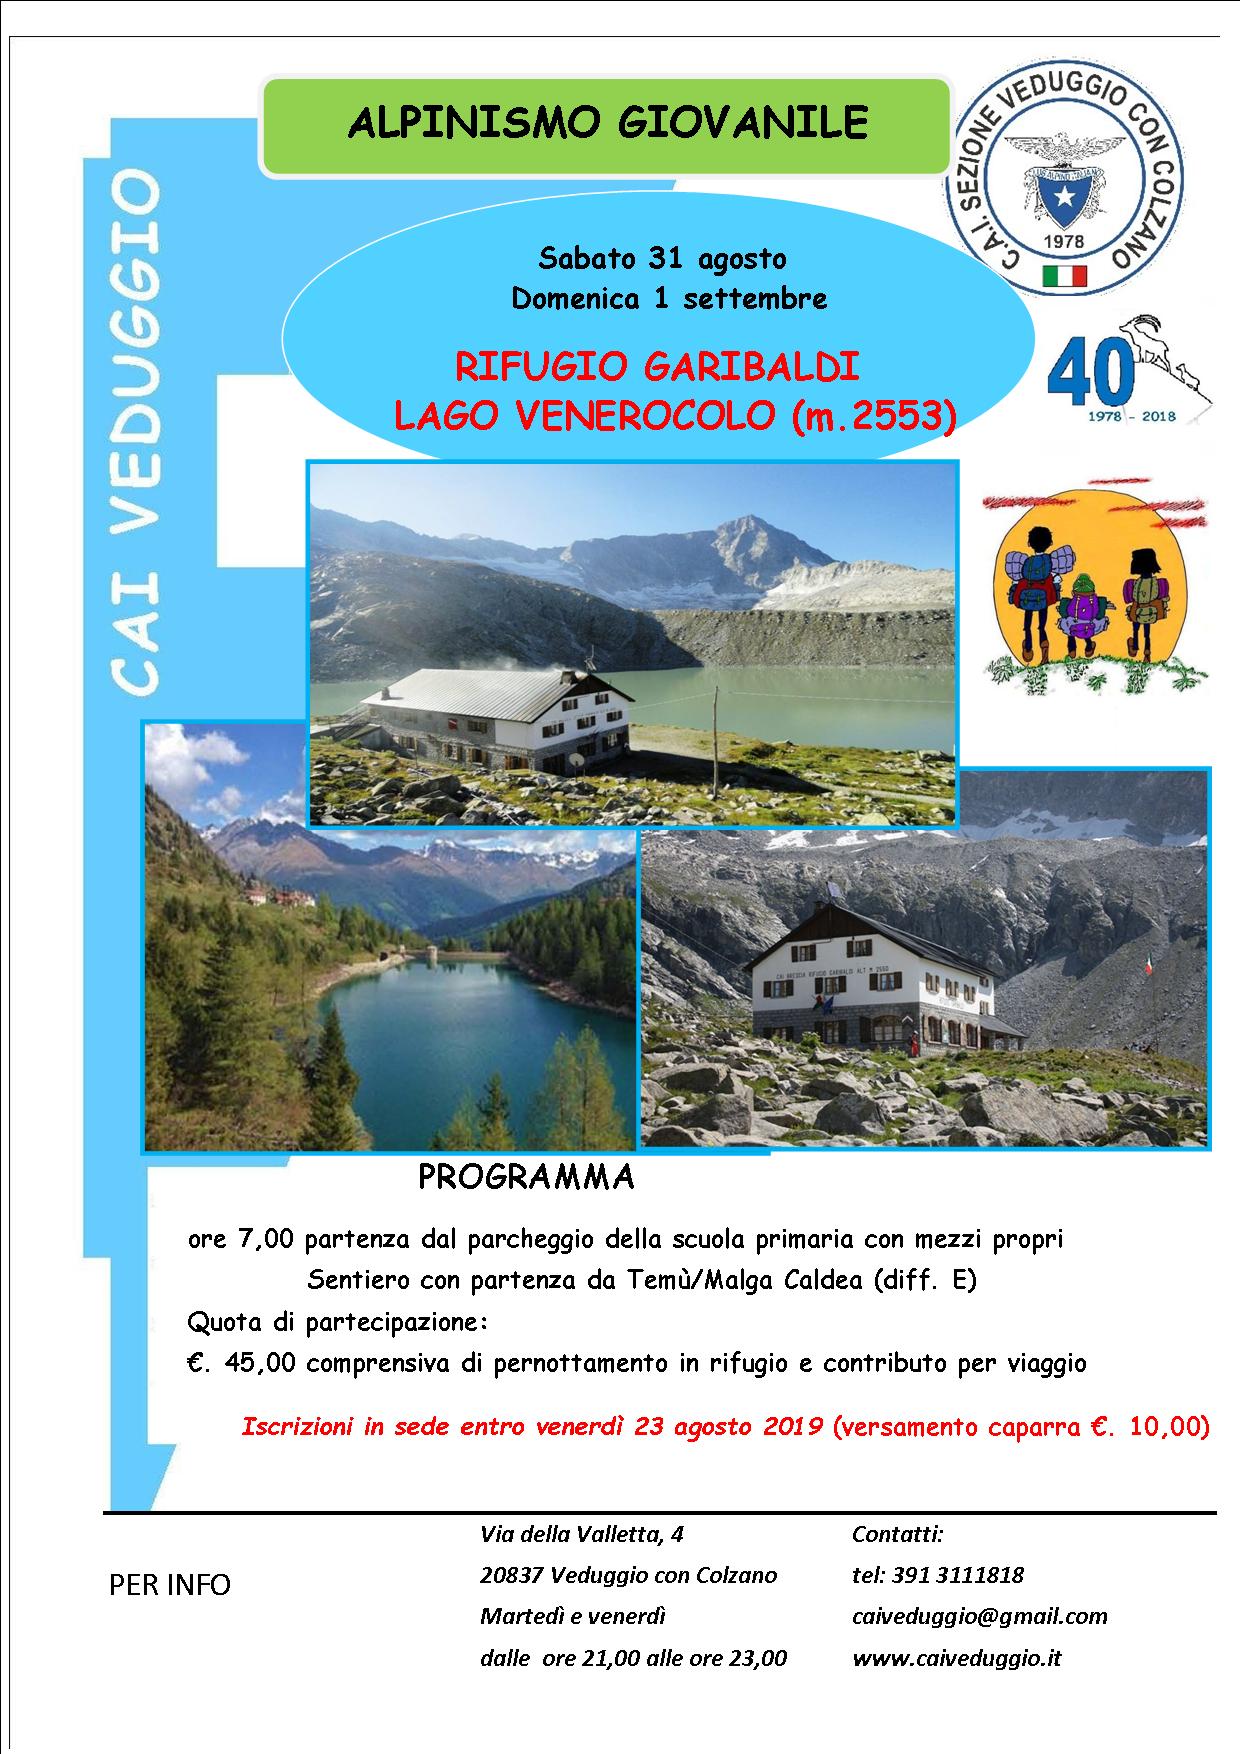 Sabato 31 agosto – Domenica 1 settembre 2019 – Alpinismo Giovanile – Rifugio Garibaldi/Lago Venerocolo (m.2553)